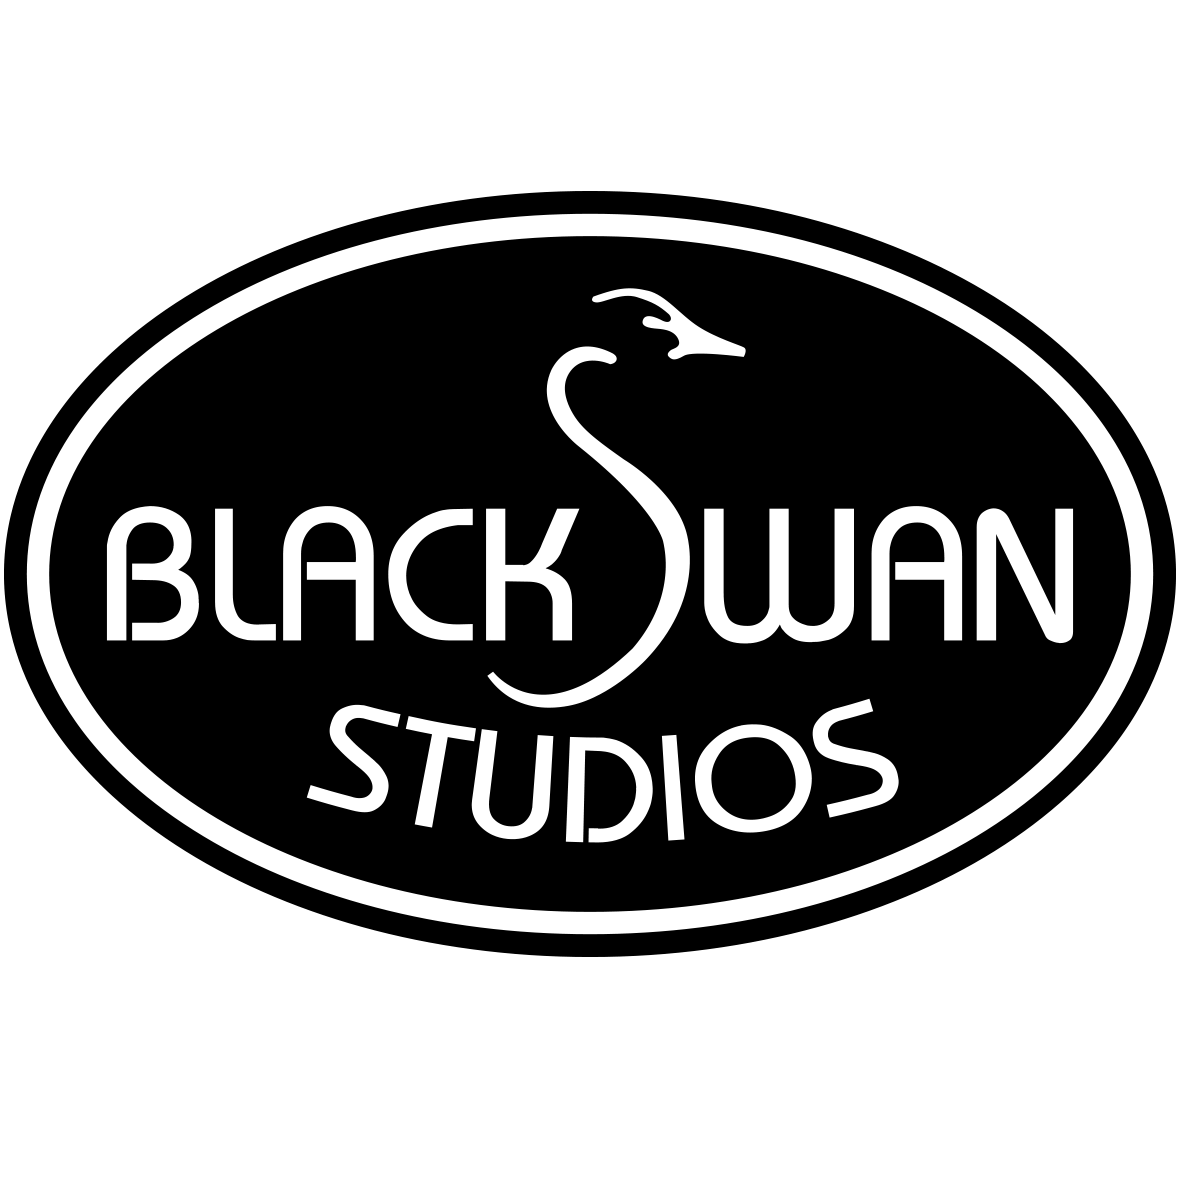 Swan in Circle Logo - Home - Black Swan Studios